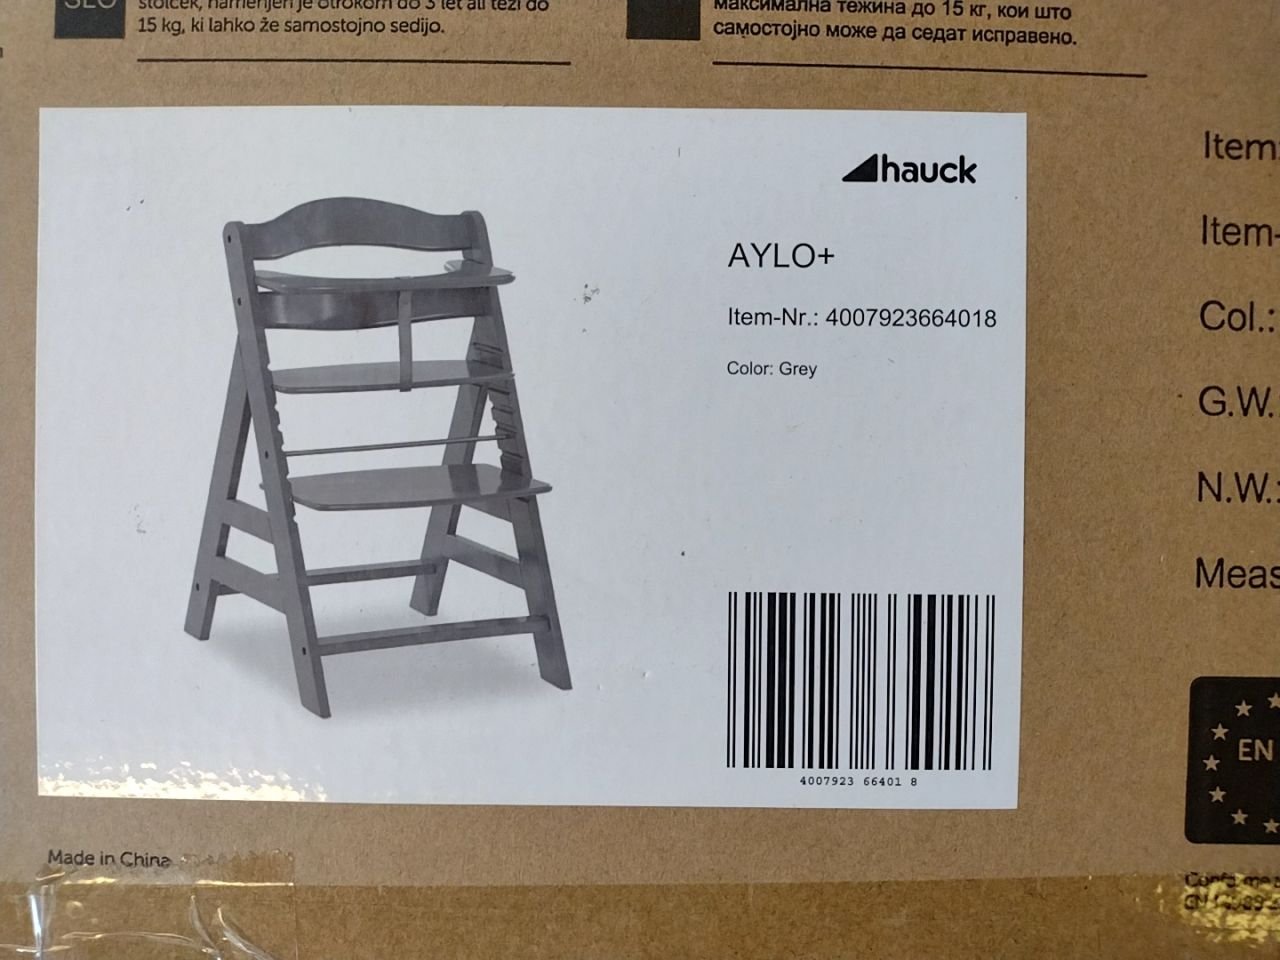 Dětská jídelní židlička hauck Aylo+